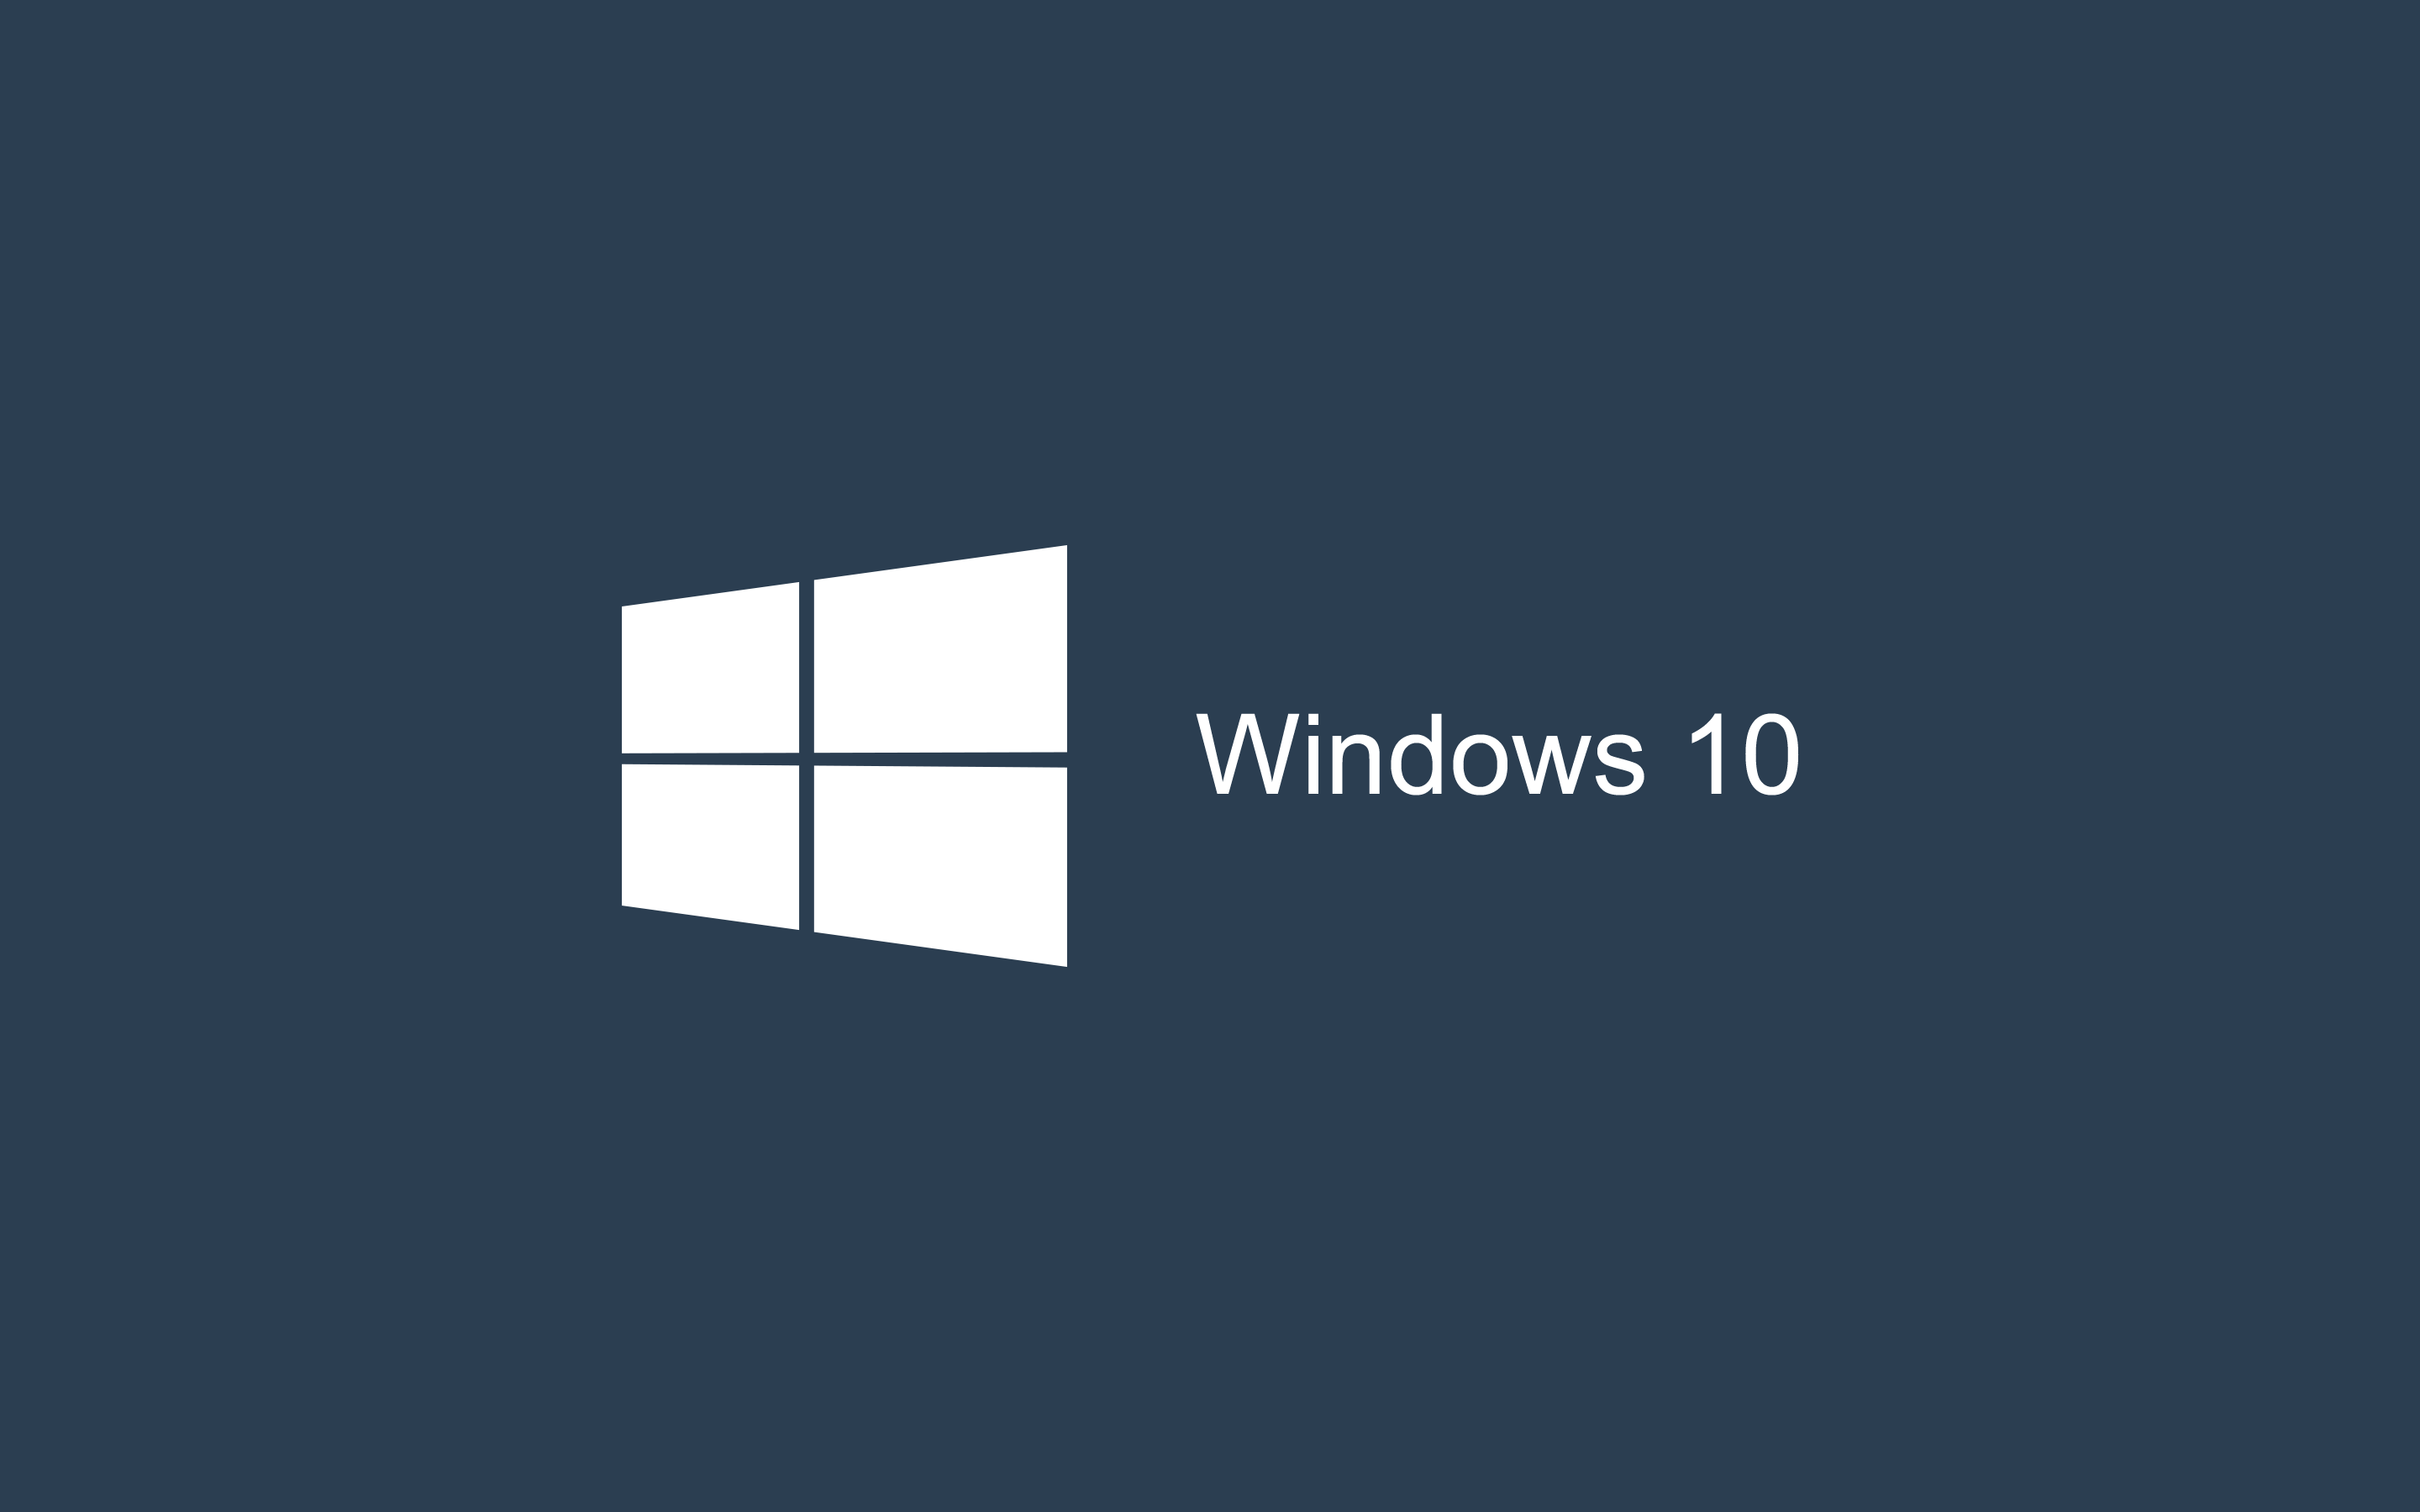 Hình nền đen trên Windows 10: Tìm kiếm một hình nền đơn giản và tinh tế cho chiếc máy tính của bạn? Hình nền đen trên Windows 10 sẽ đáp ứng nhu cầu của bạn. Với phong cách thanh lịch, đen là màu sức mạnh, một sự lựa chọn hoàn hảo cho các bạn muốn tối giản hoá giao diện máy tính.